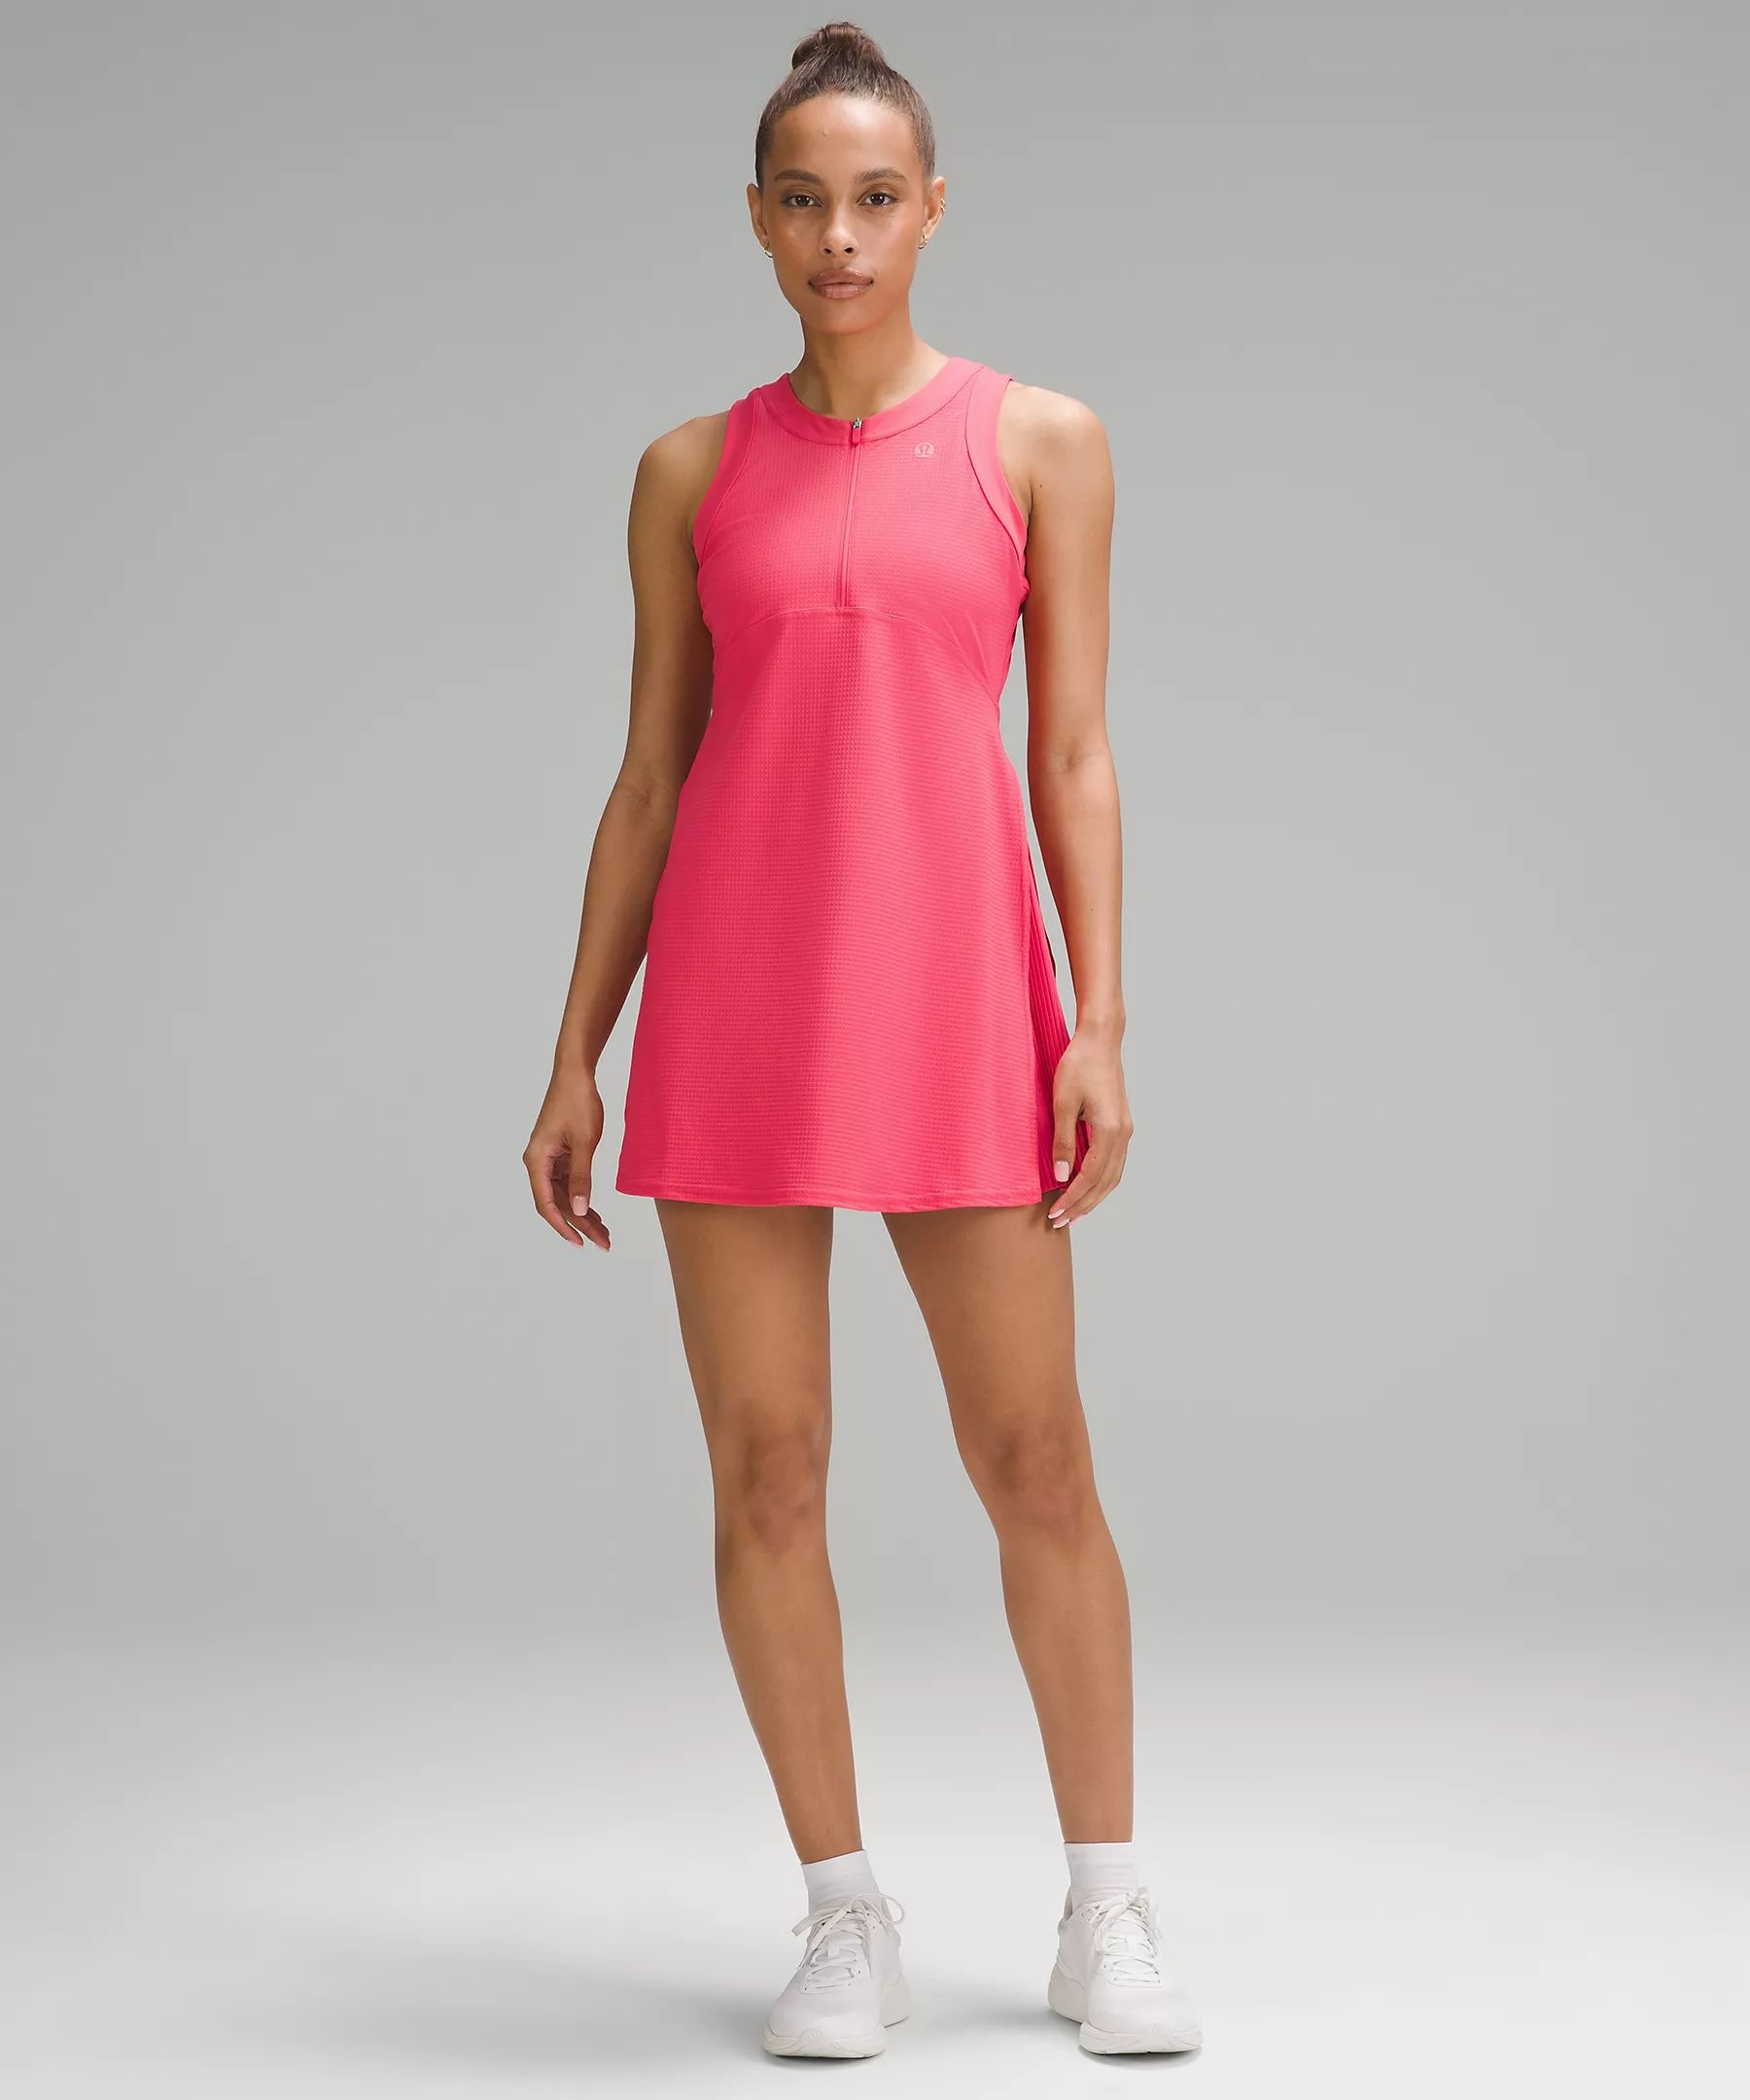 Grid-Texture Sleeveless Linerless Tennis Dress | Lululemon (US)